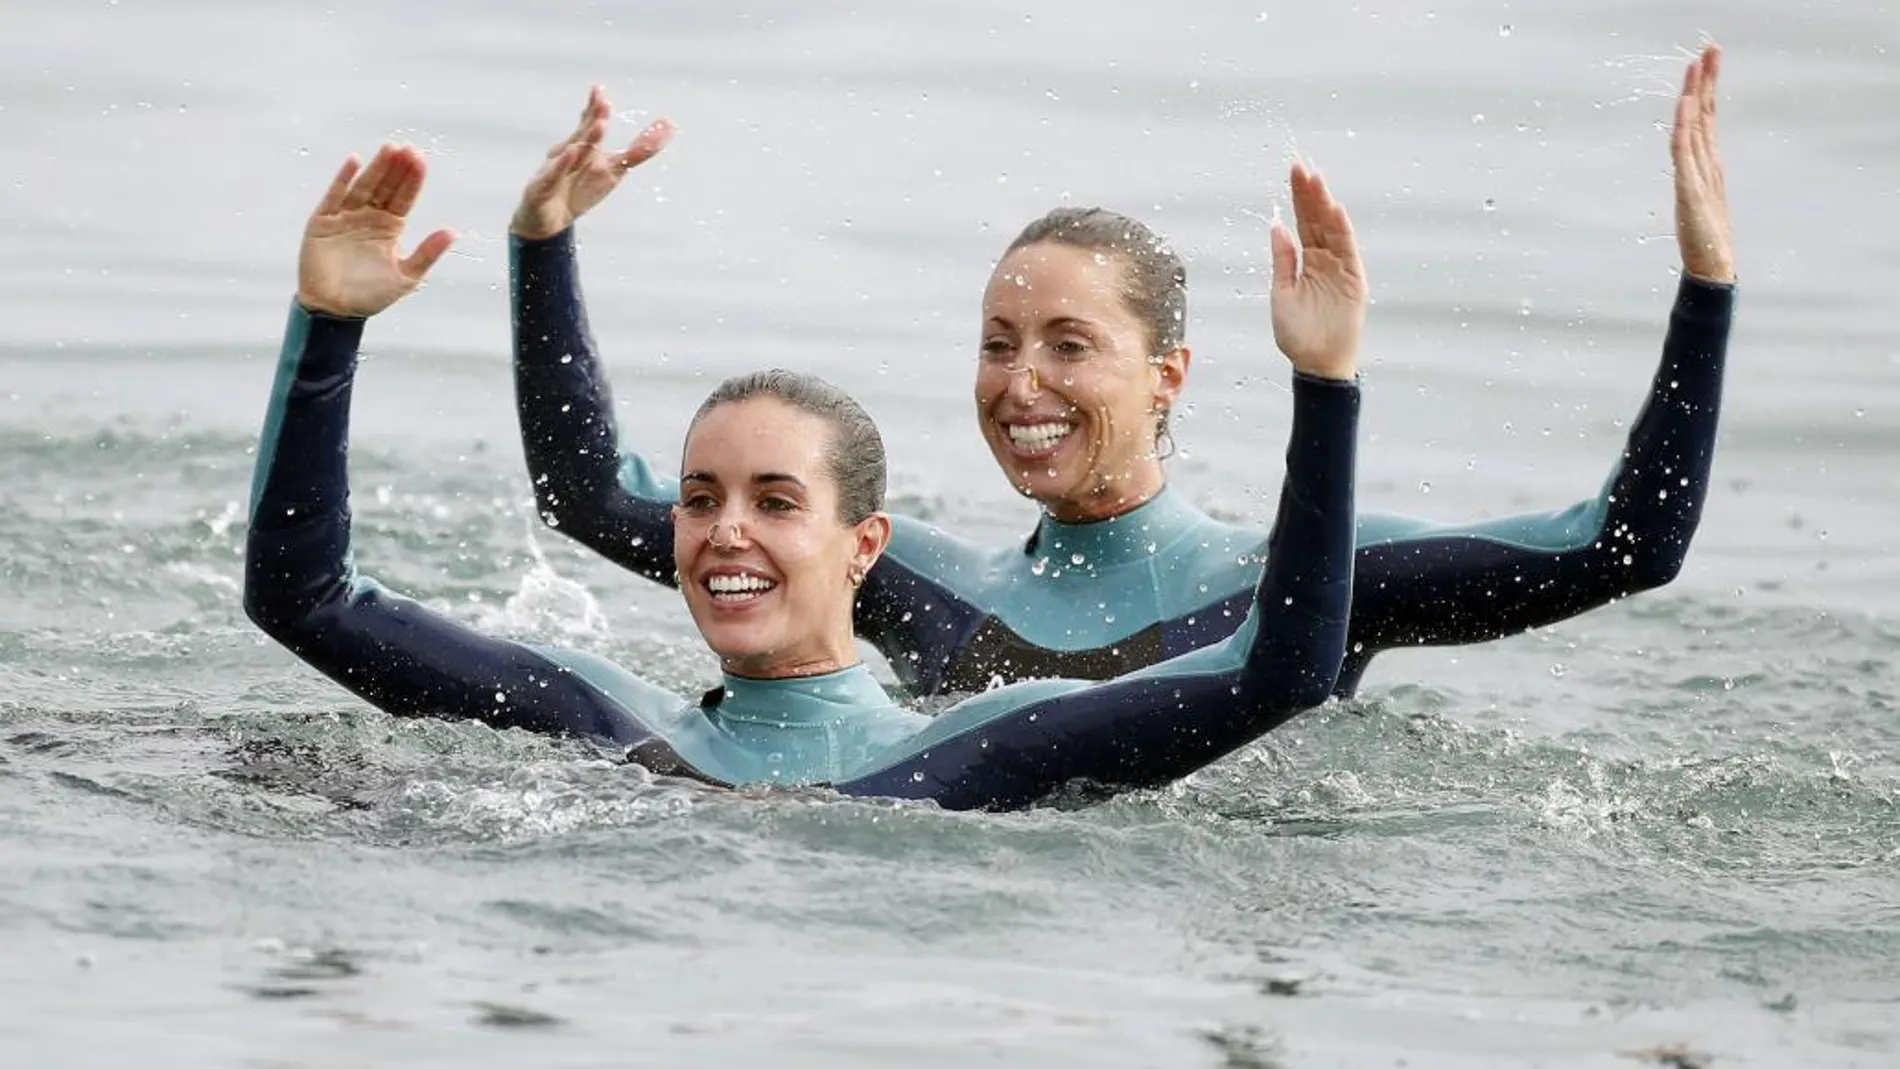 Gemma Mengual y Ona Carbonell, estrenaron esta mañana el año olímpico con una coreografía de natación sincronizada, hecha por primera vez en el mar